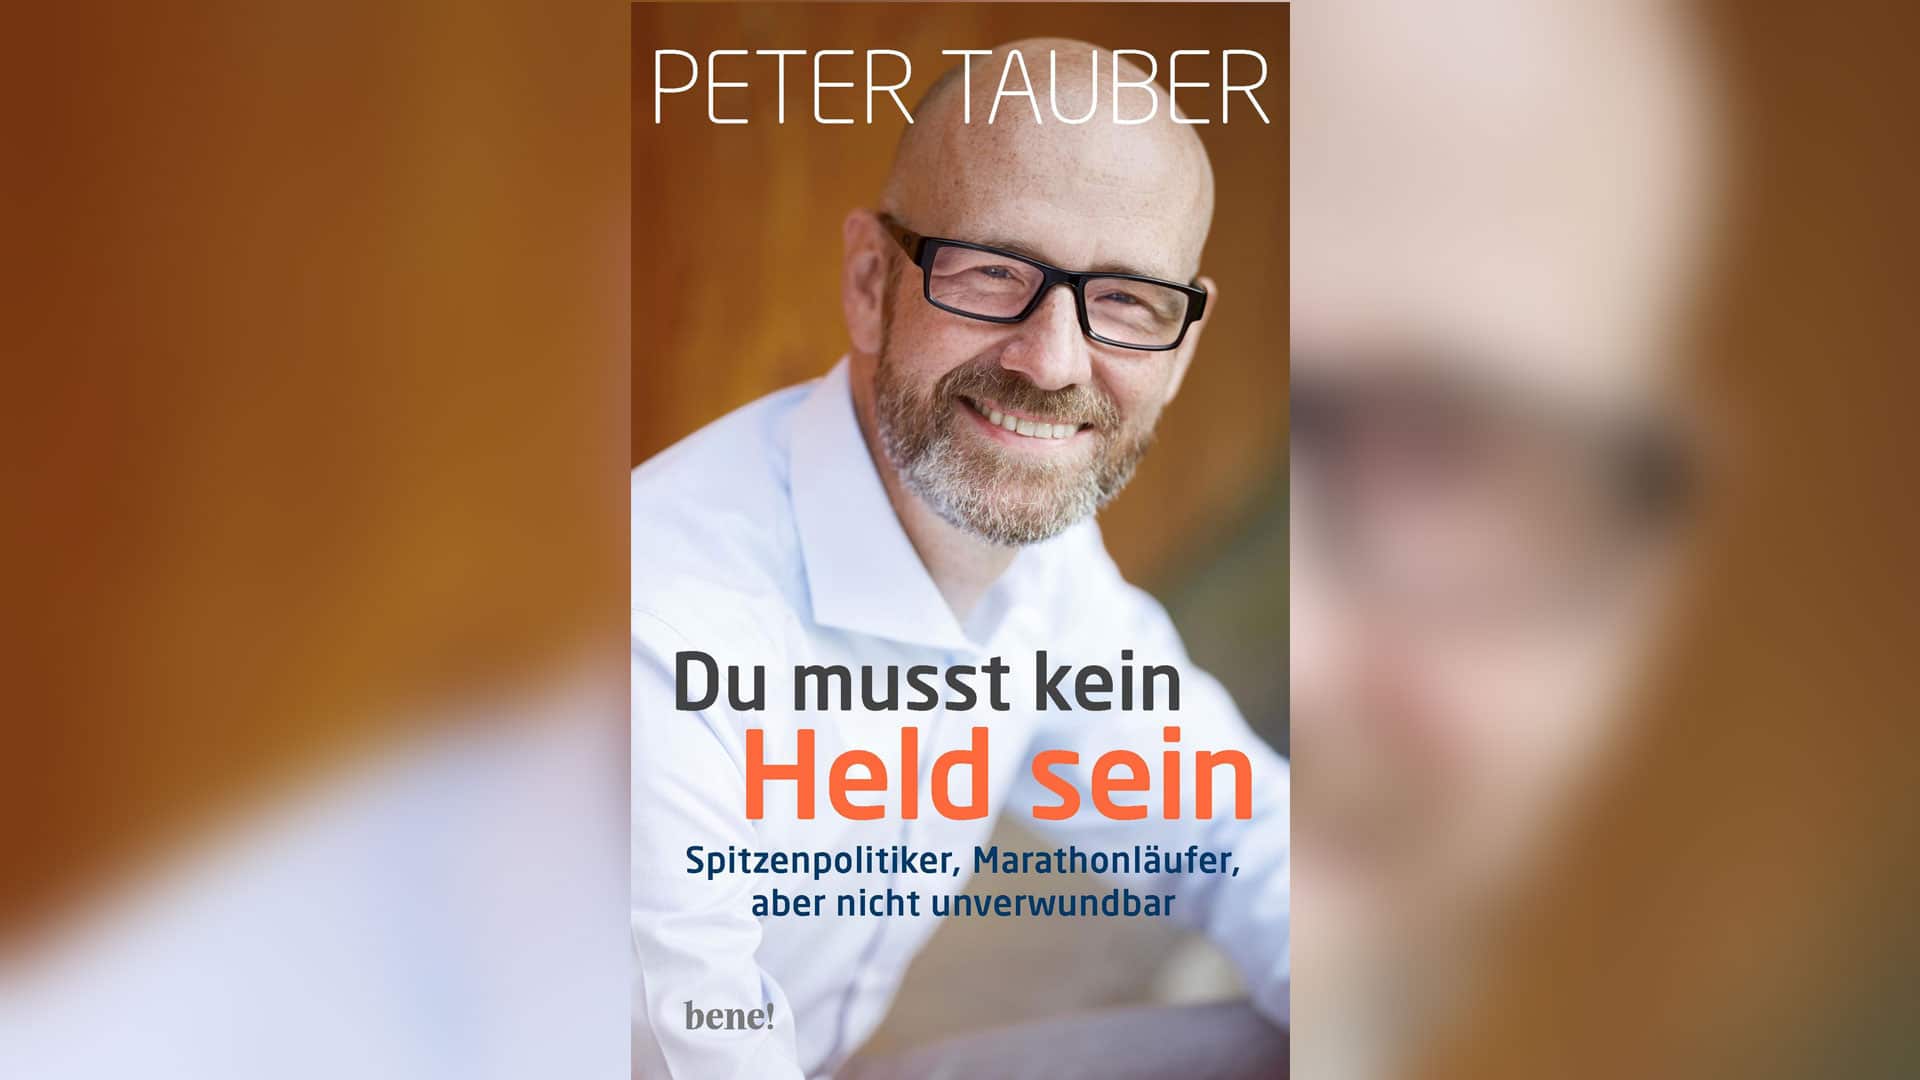 Peter Tauber beschreibt in seinem Buch seine Beziehung zu Gott